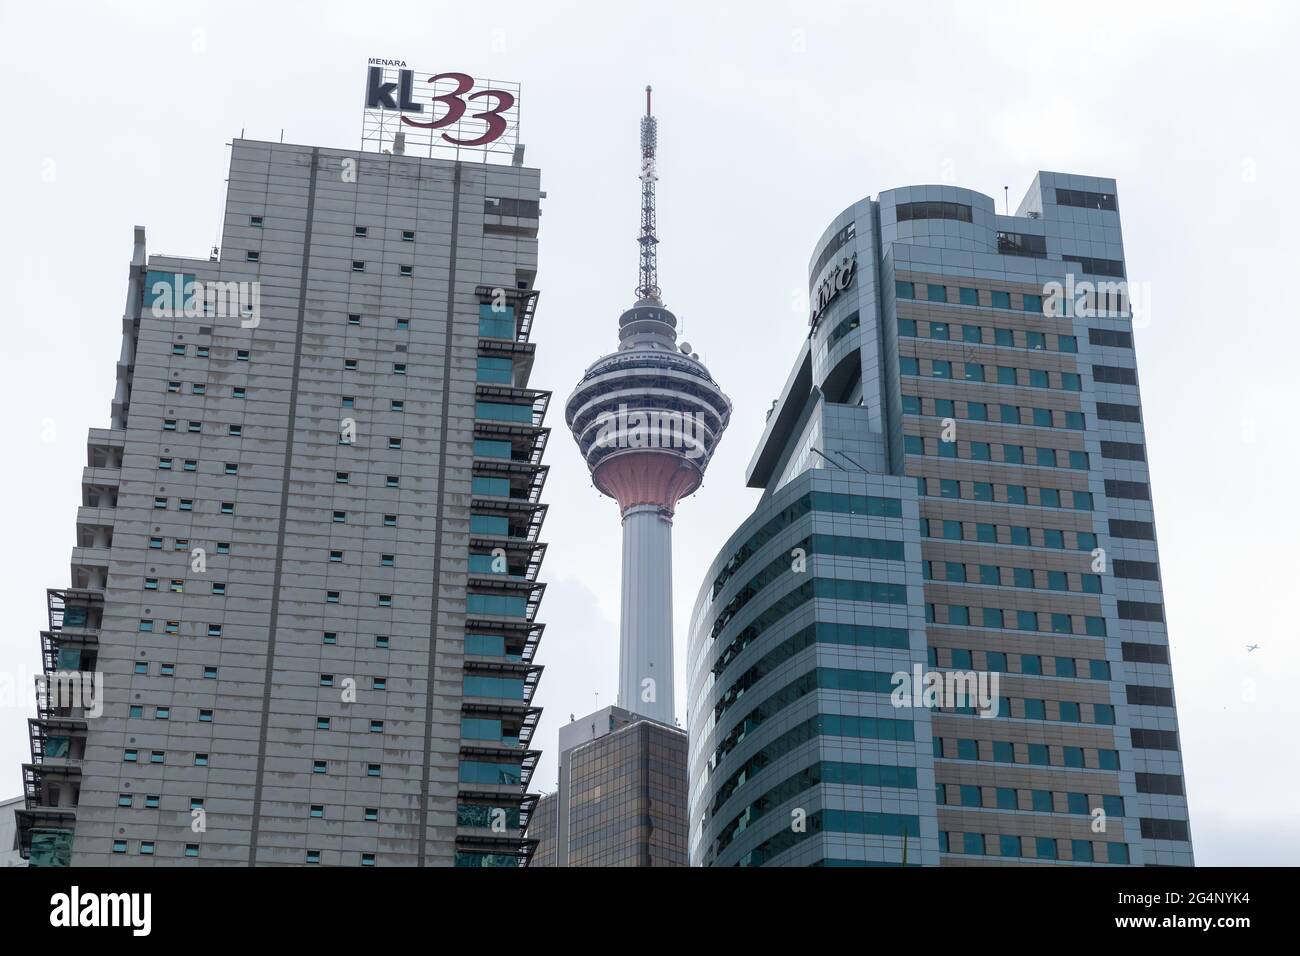 Kuala Lumpur, Malaisie - 28 novembre 2019 : gratte-ciel avec de grands immeubles de bureaux et tour de télévision Banque D'Images